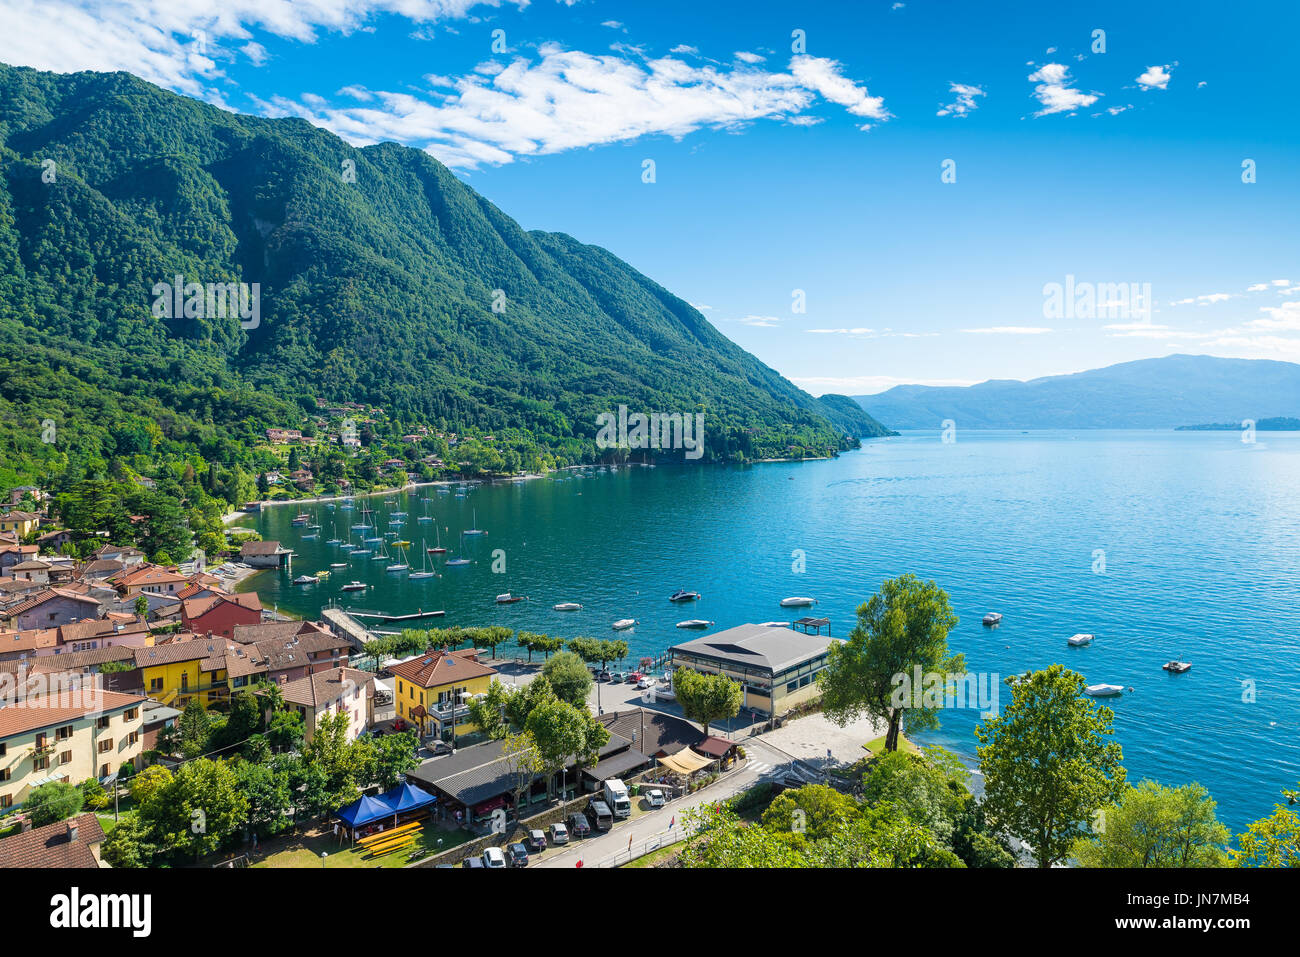 Il Lago Maggiore, il Verbano, Caldè, Italia. Uno degli angoli più suggestivi del lago Maggiore su una bella giornata d'estate Foto Stock